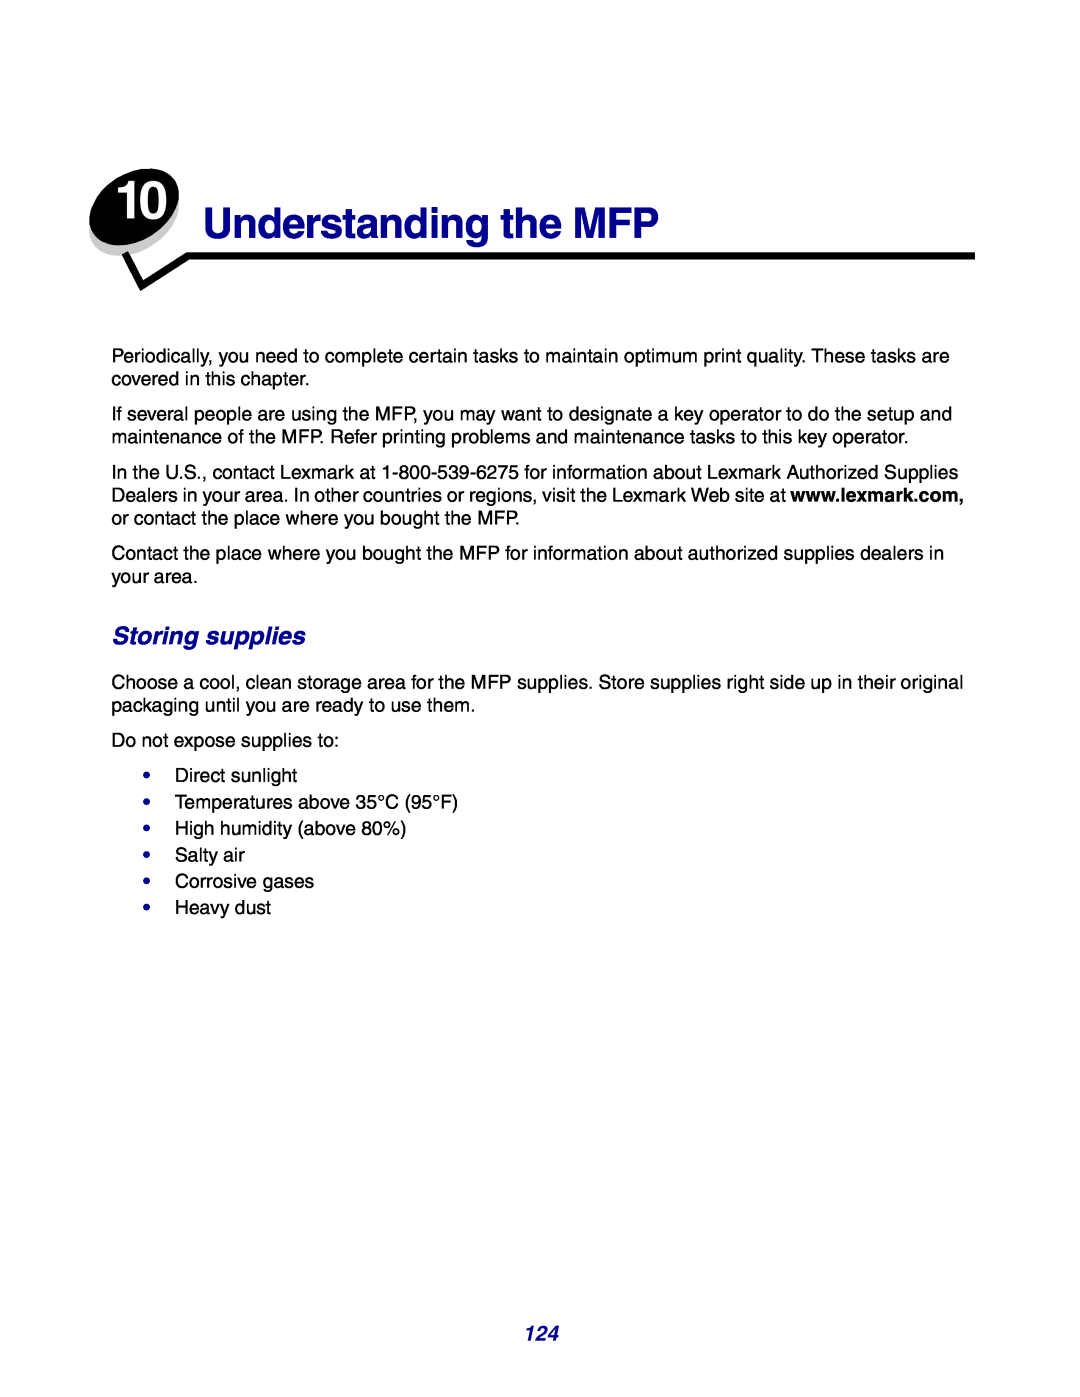 Lexmark X642e manual Understanding the MFP, Storing supplies 